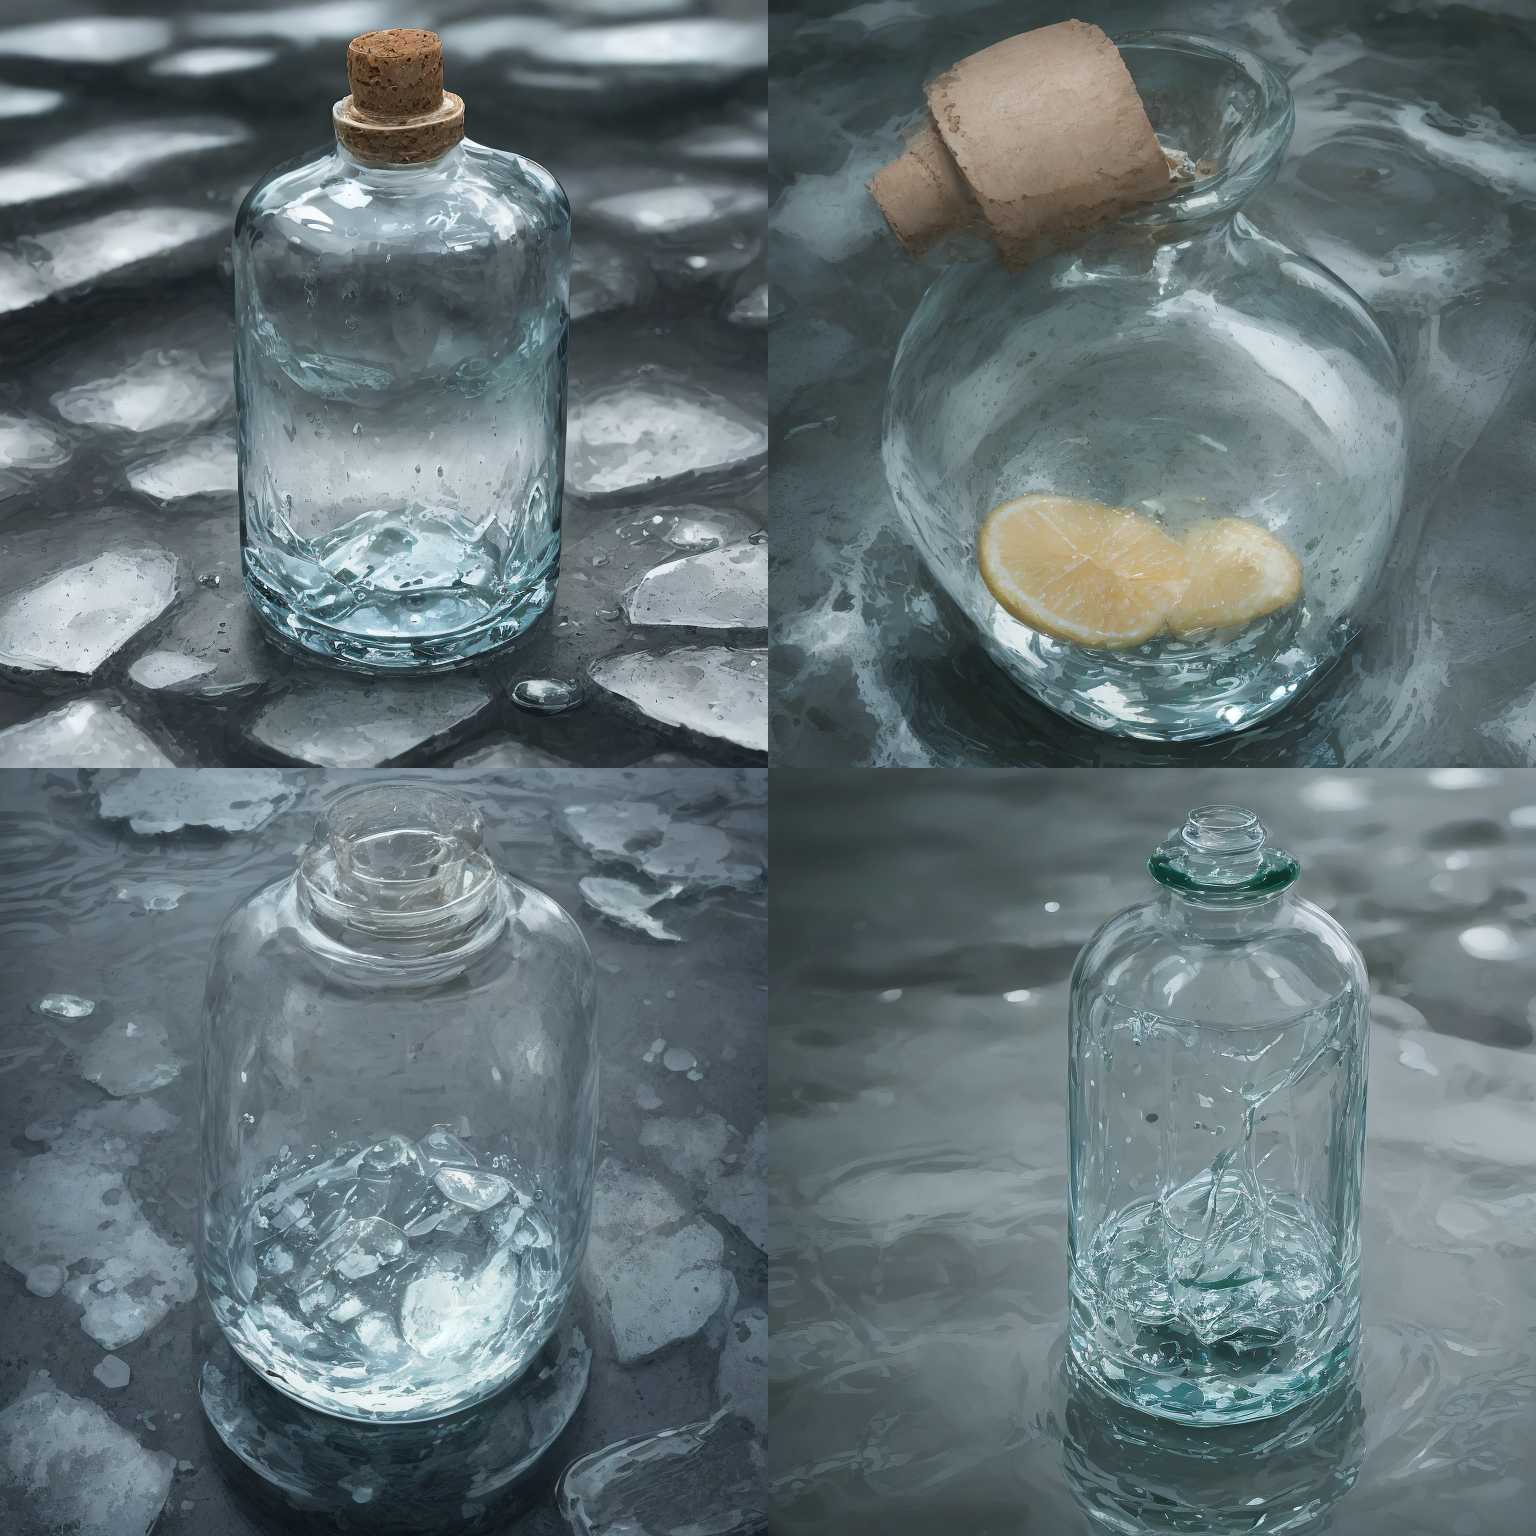 An empty bottle in water